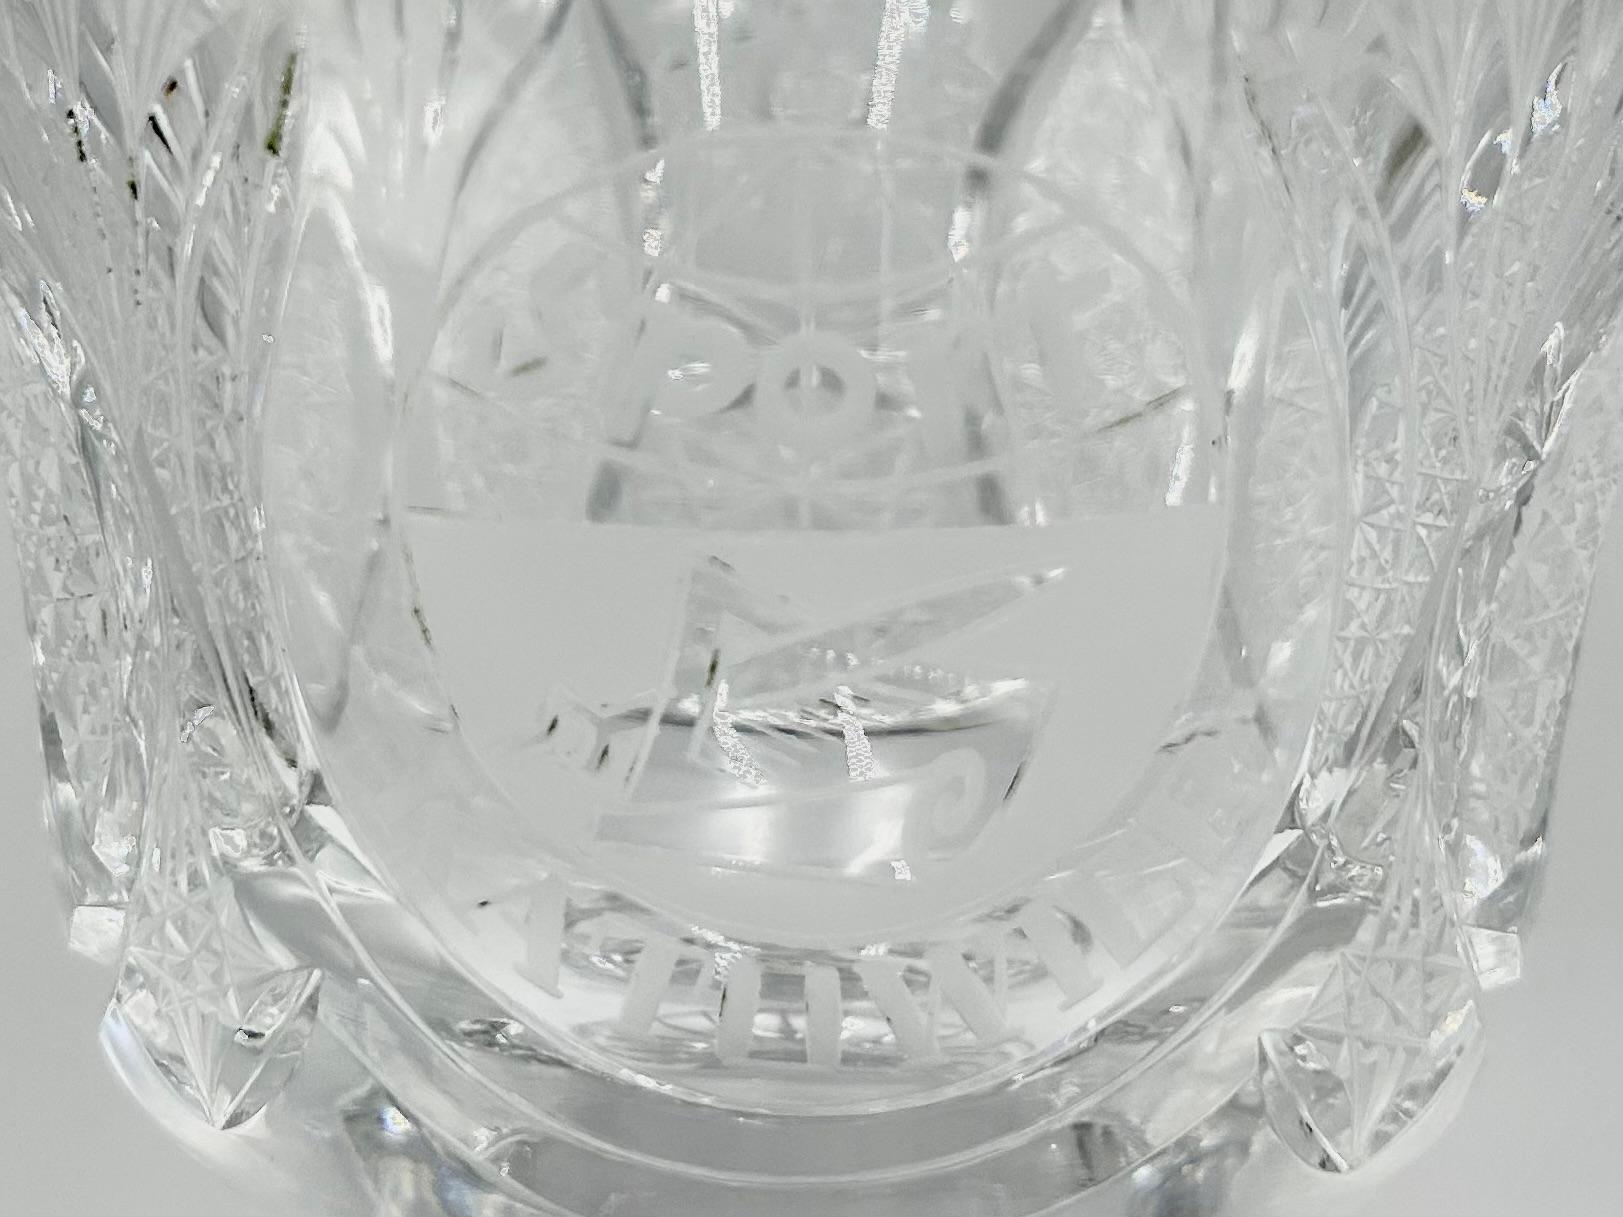 Une coupe en cristal avec l'inscription SPORT KATOWICE

Fabriqué en Pologne

Très bon état, sans dommage.

Hauteur : 24cm

Diamètre de la coupe : 14 cm.